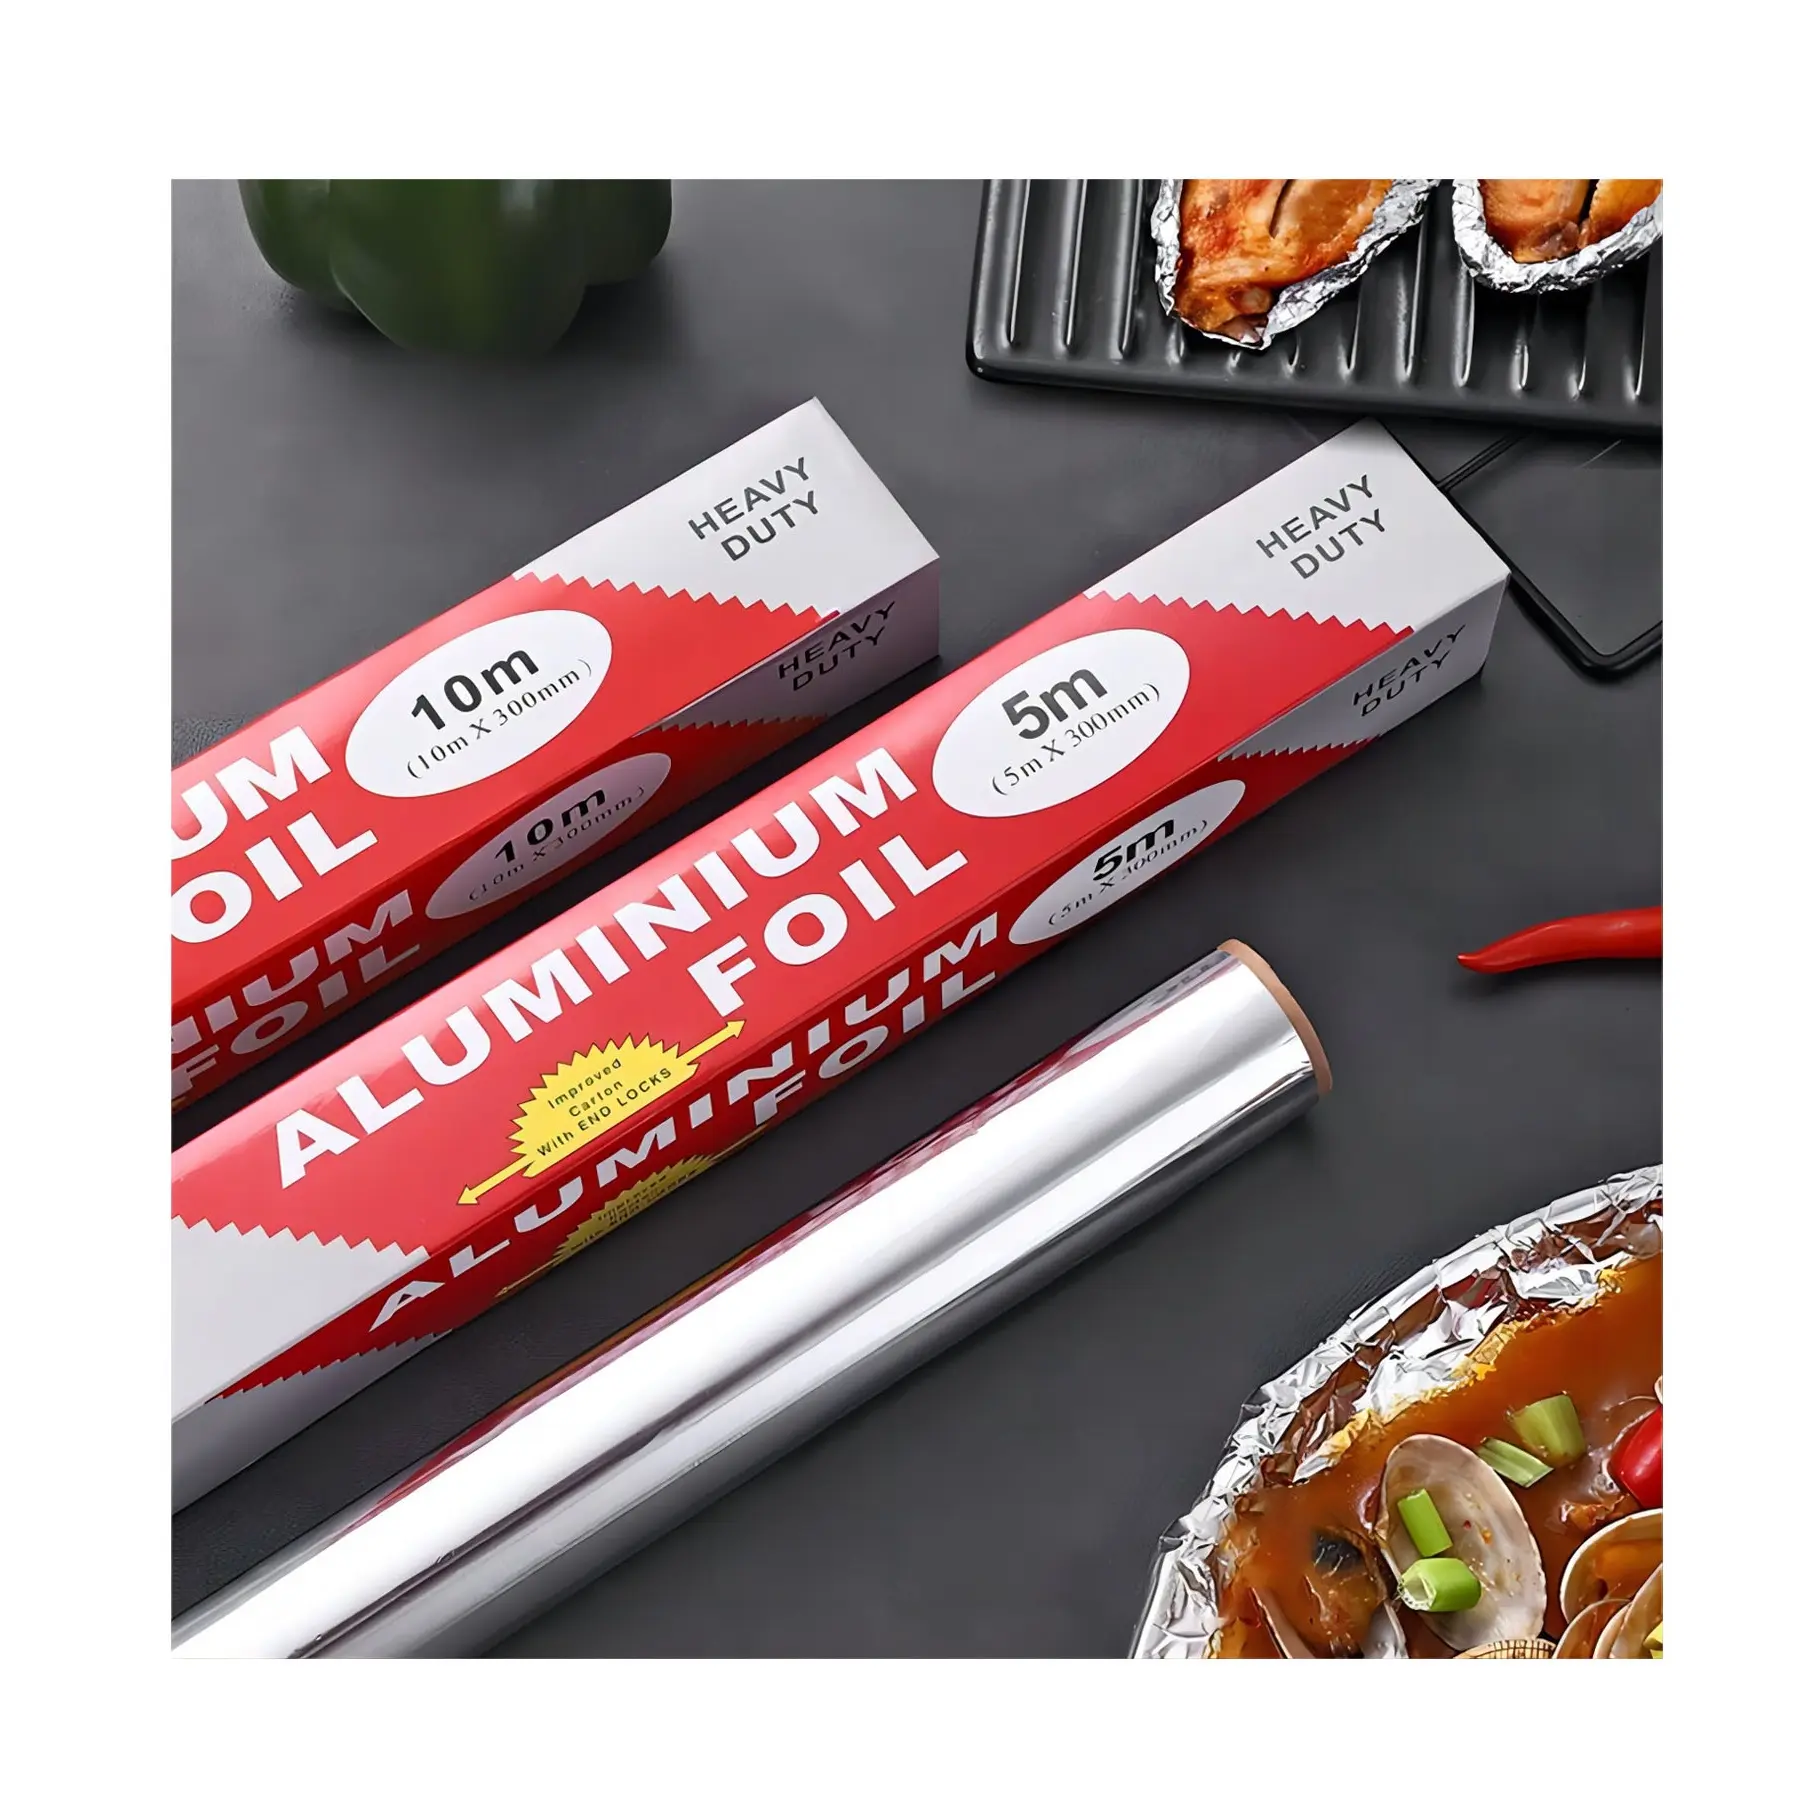 Folienrolle hochleistungs-Aluminiumfolienverpackungspapier Einweg-Lebensmittelverpackung Aluminiumfolienpapierrolle für den Gebrauch in der Küche